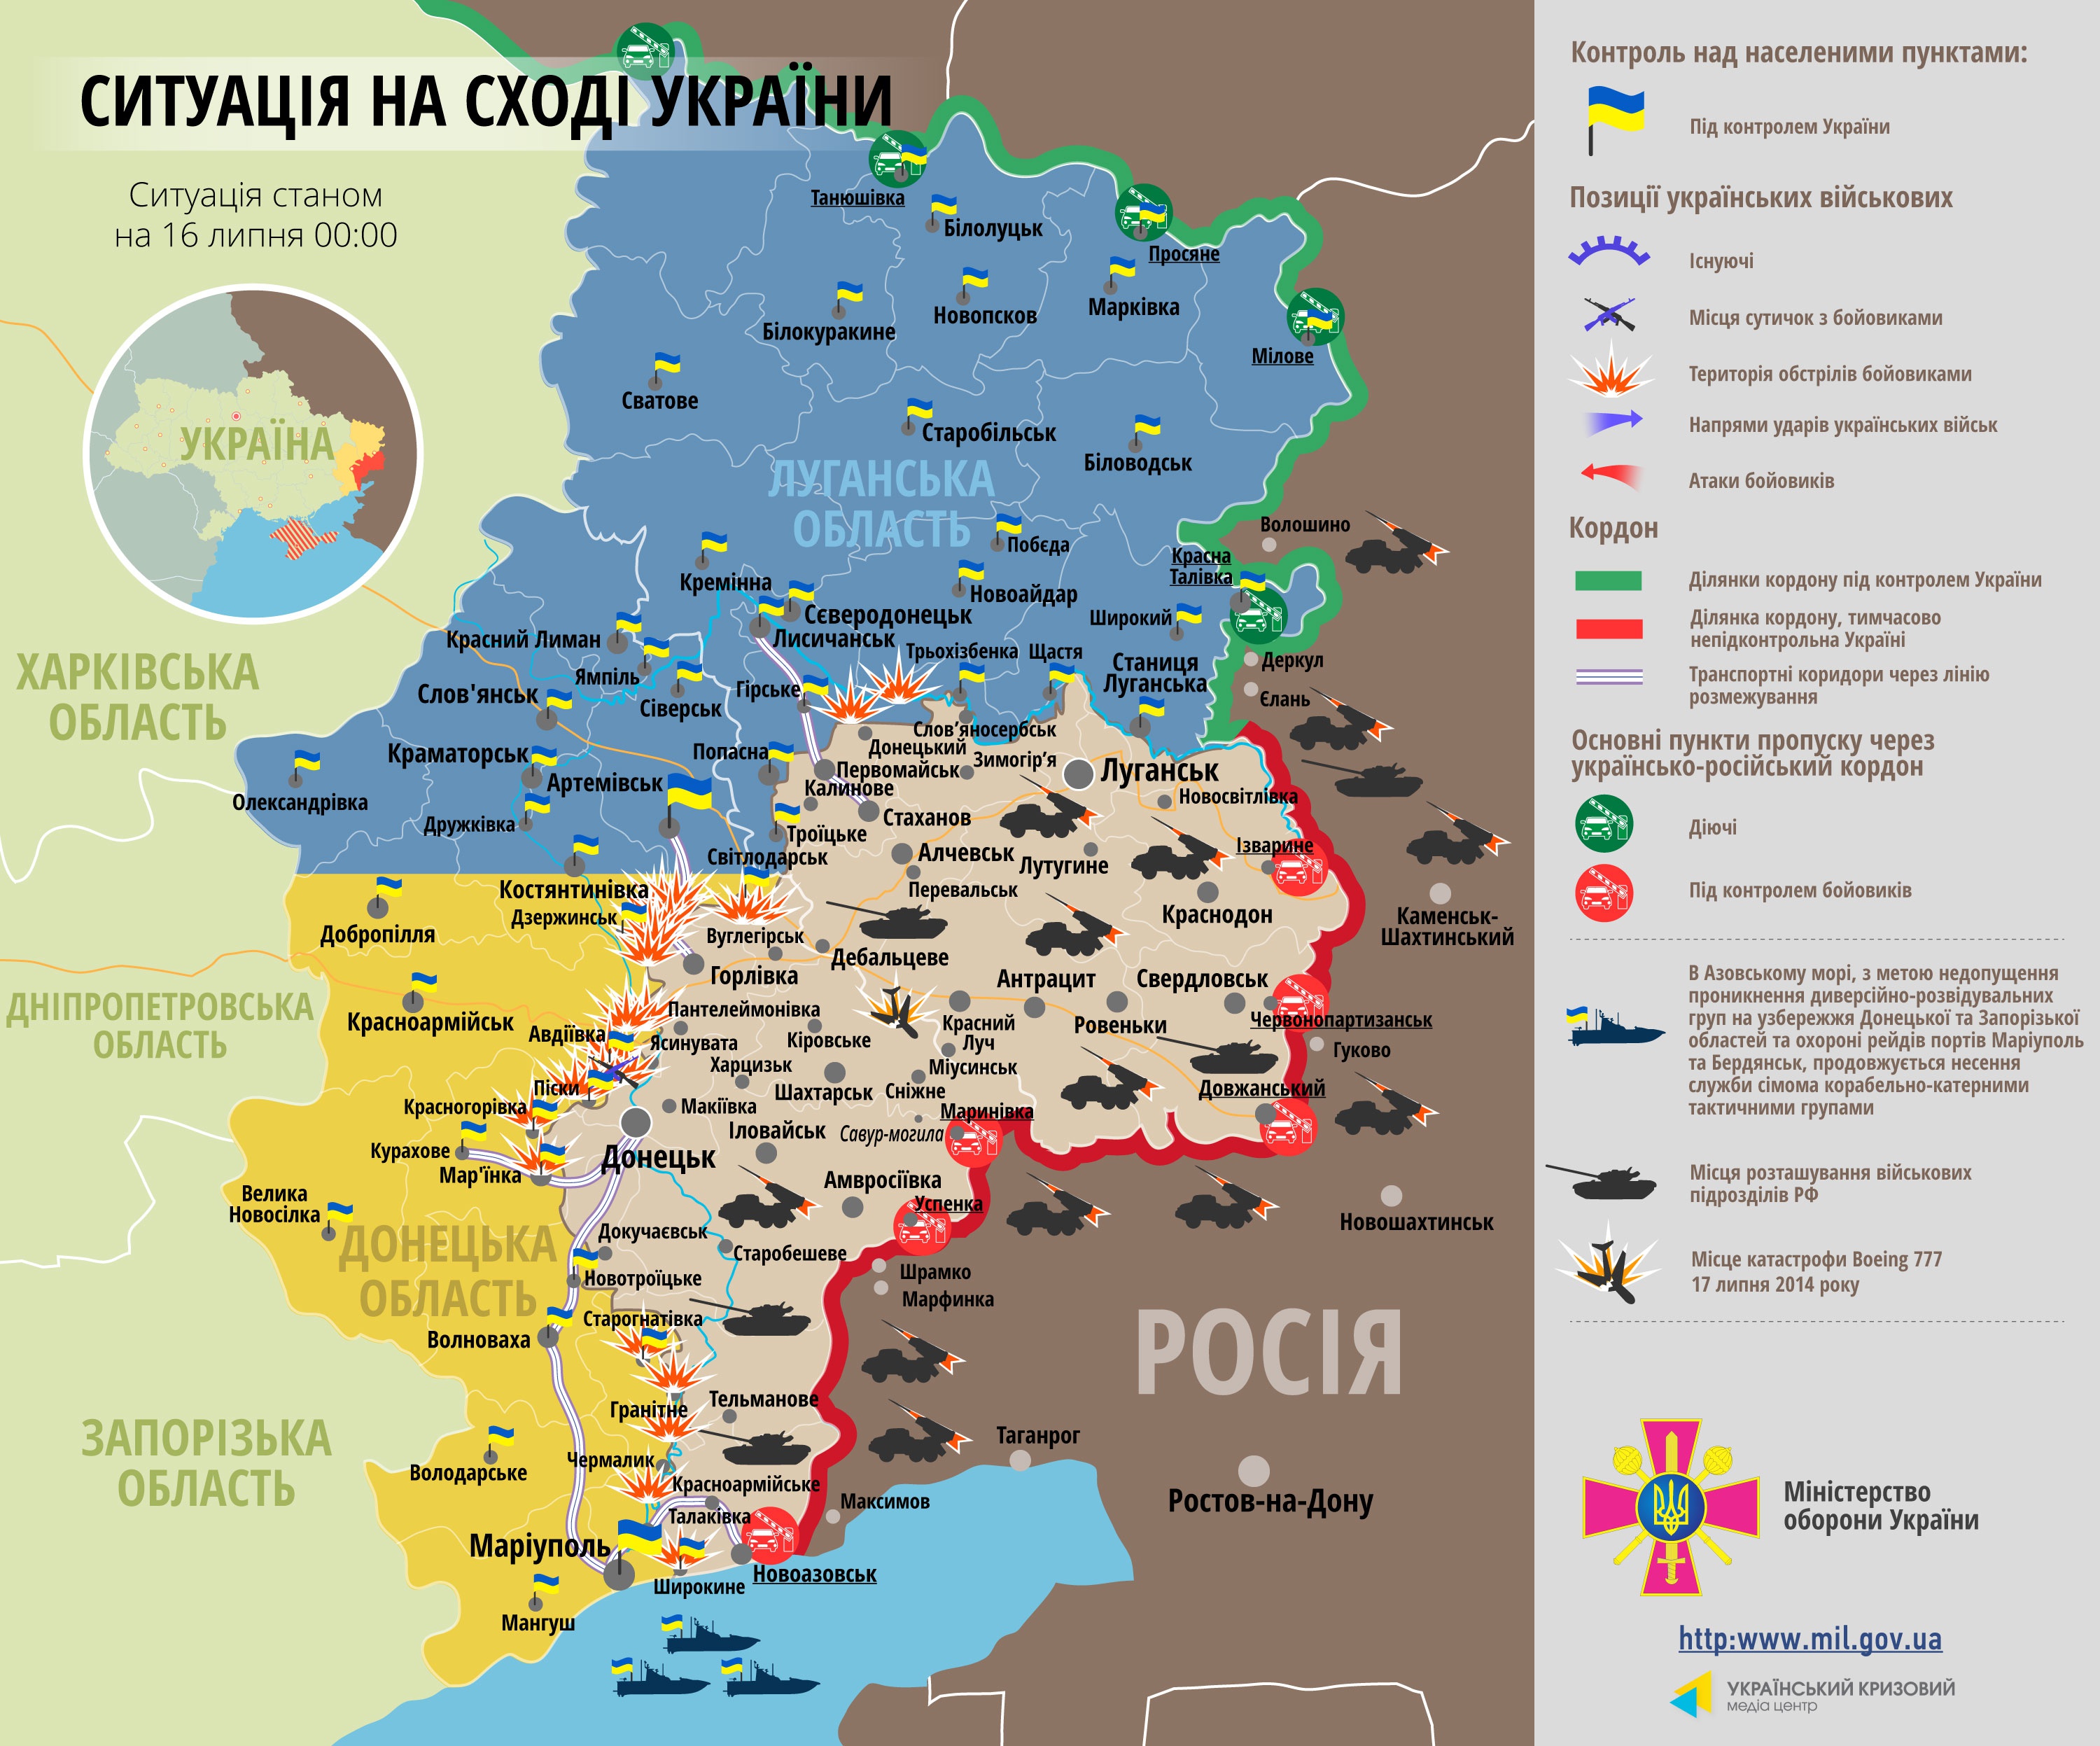 Самые резонансные события дня в Донбассе: военные дали отпор боевикам, а силовики предотвратили теракт (видео)